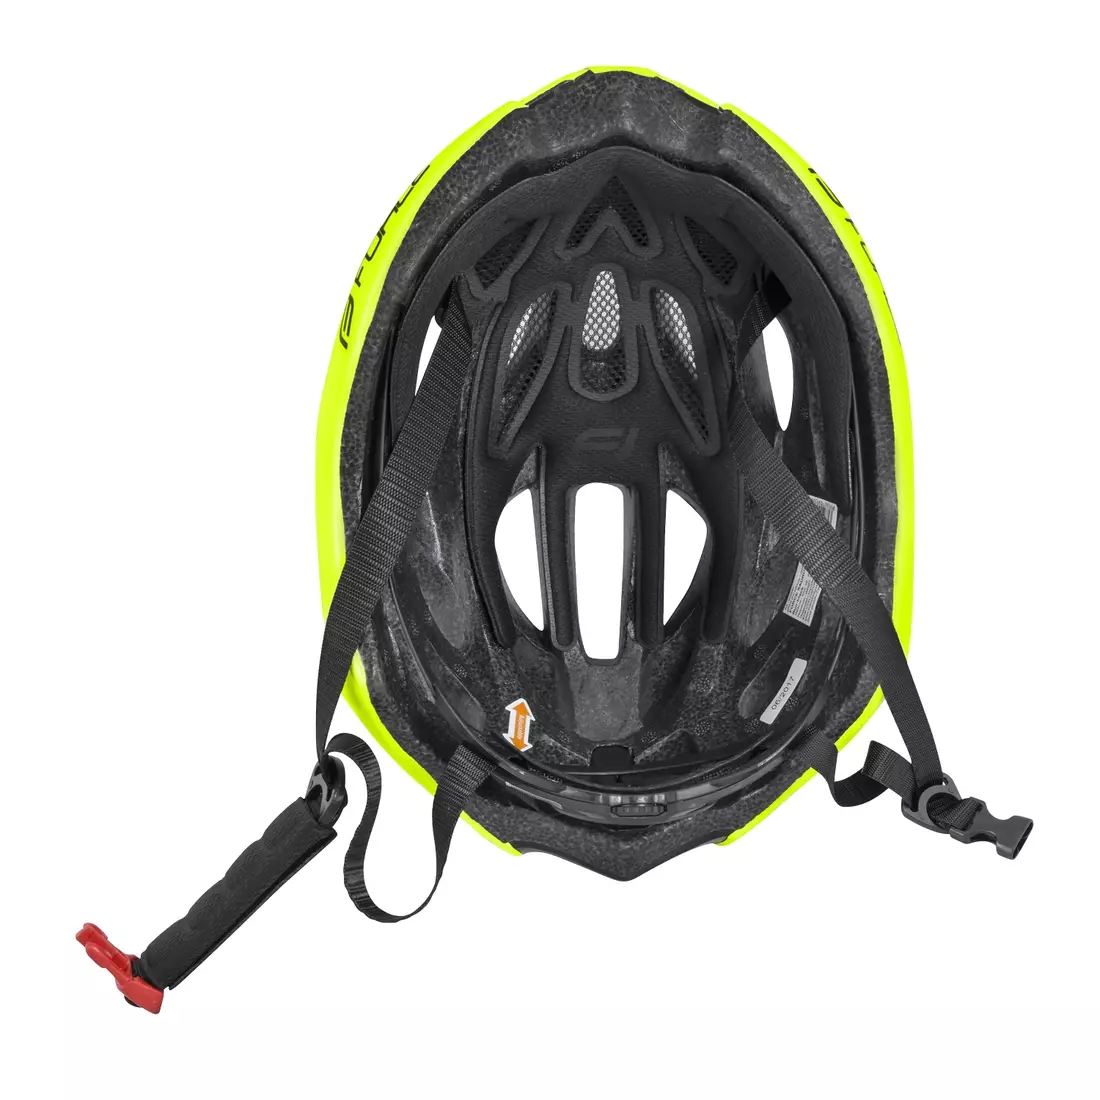 FORCE SAURUS bicycle helmet SAURUS fluorine black